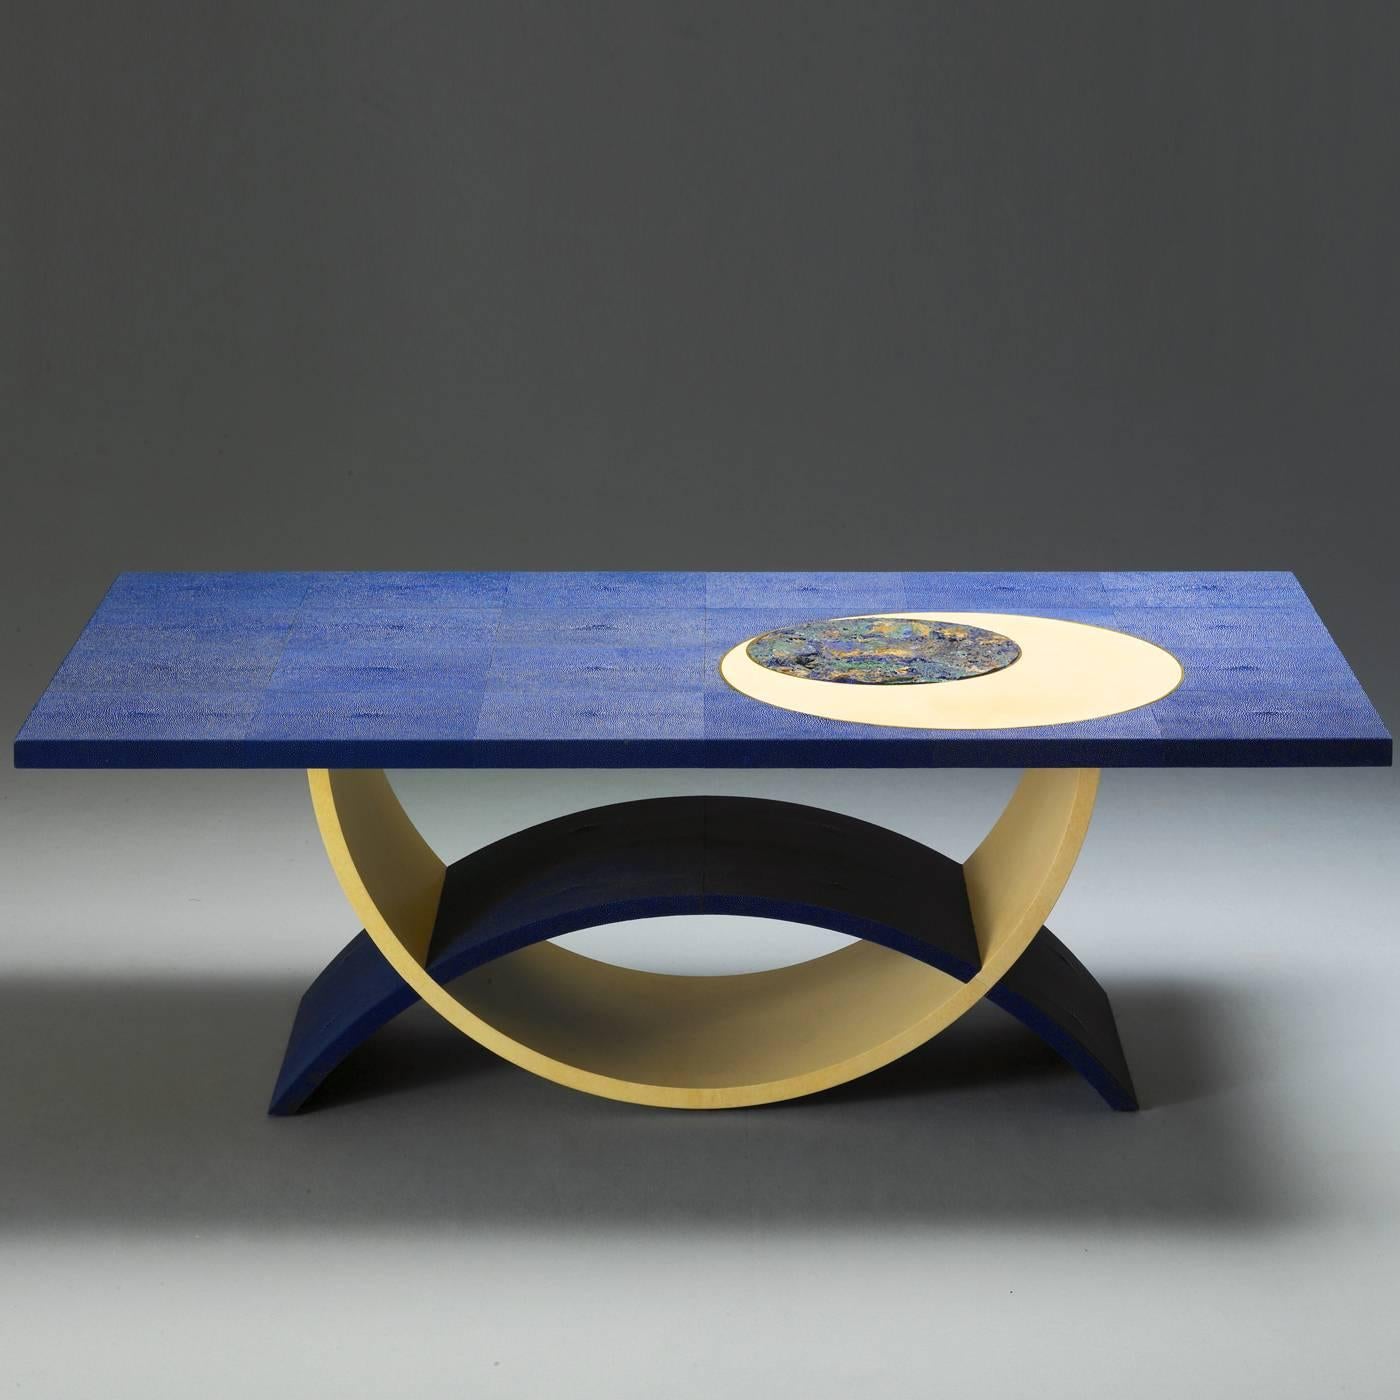 Cette table de salon saisissante présente un plateau garni de galuchat bleu (avec sa texture rugueuse caractéristique). Le sommet est orné d'un insert rond en pierre azurite à l'intérieur d'un plus grand rond en parchemin dont le profil extérieur